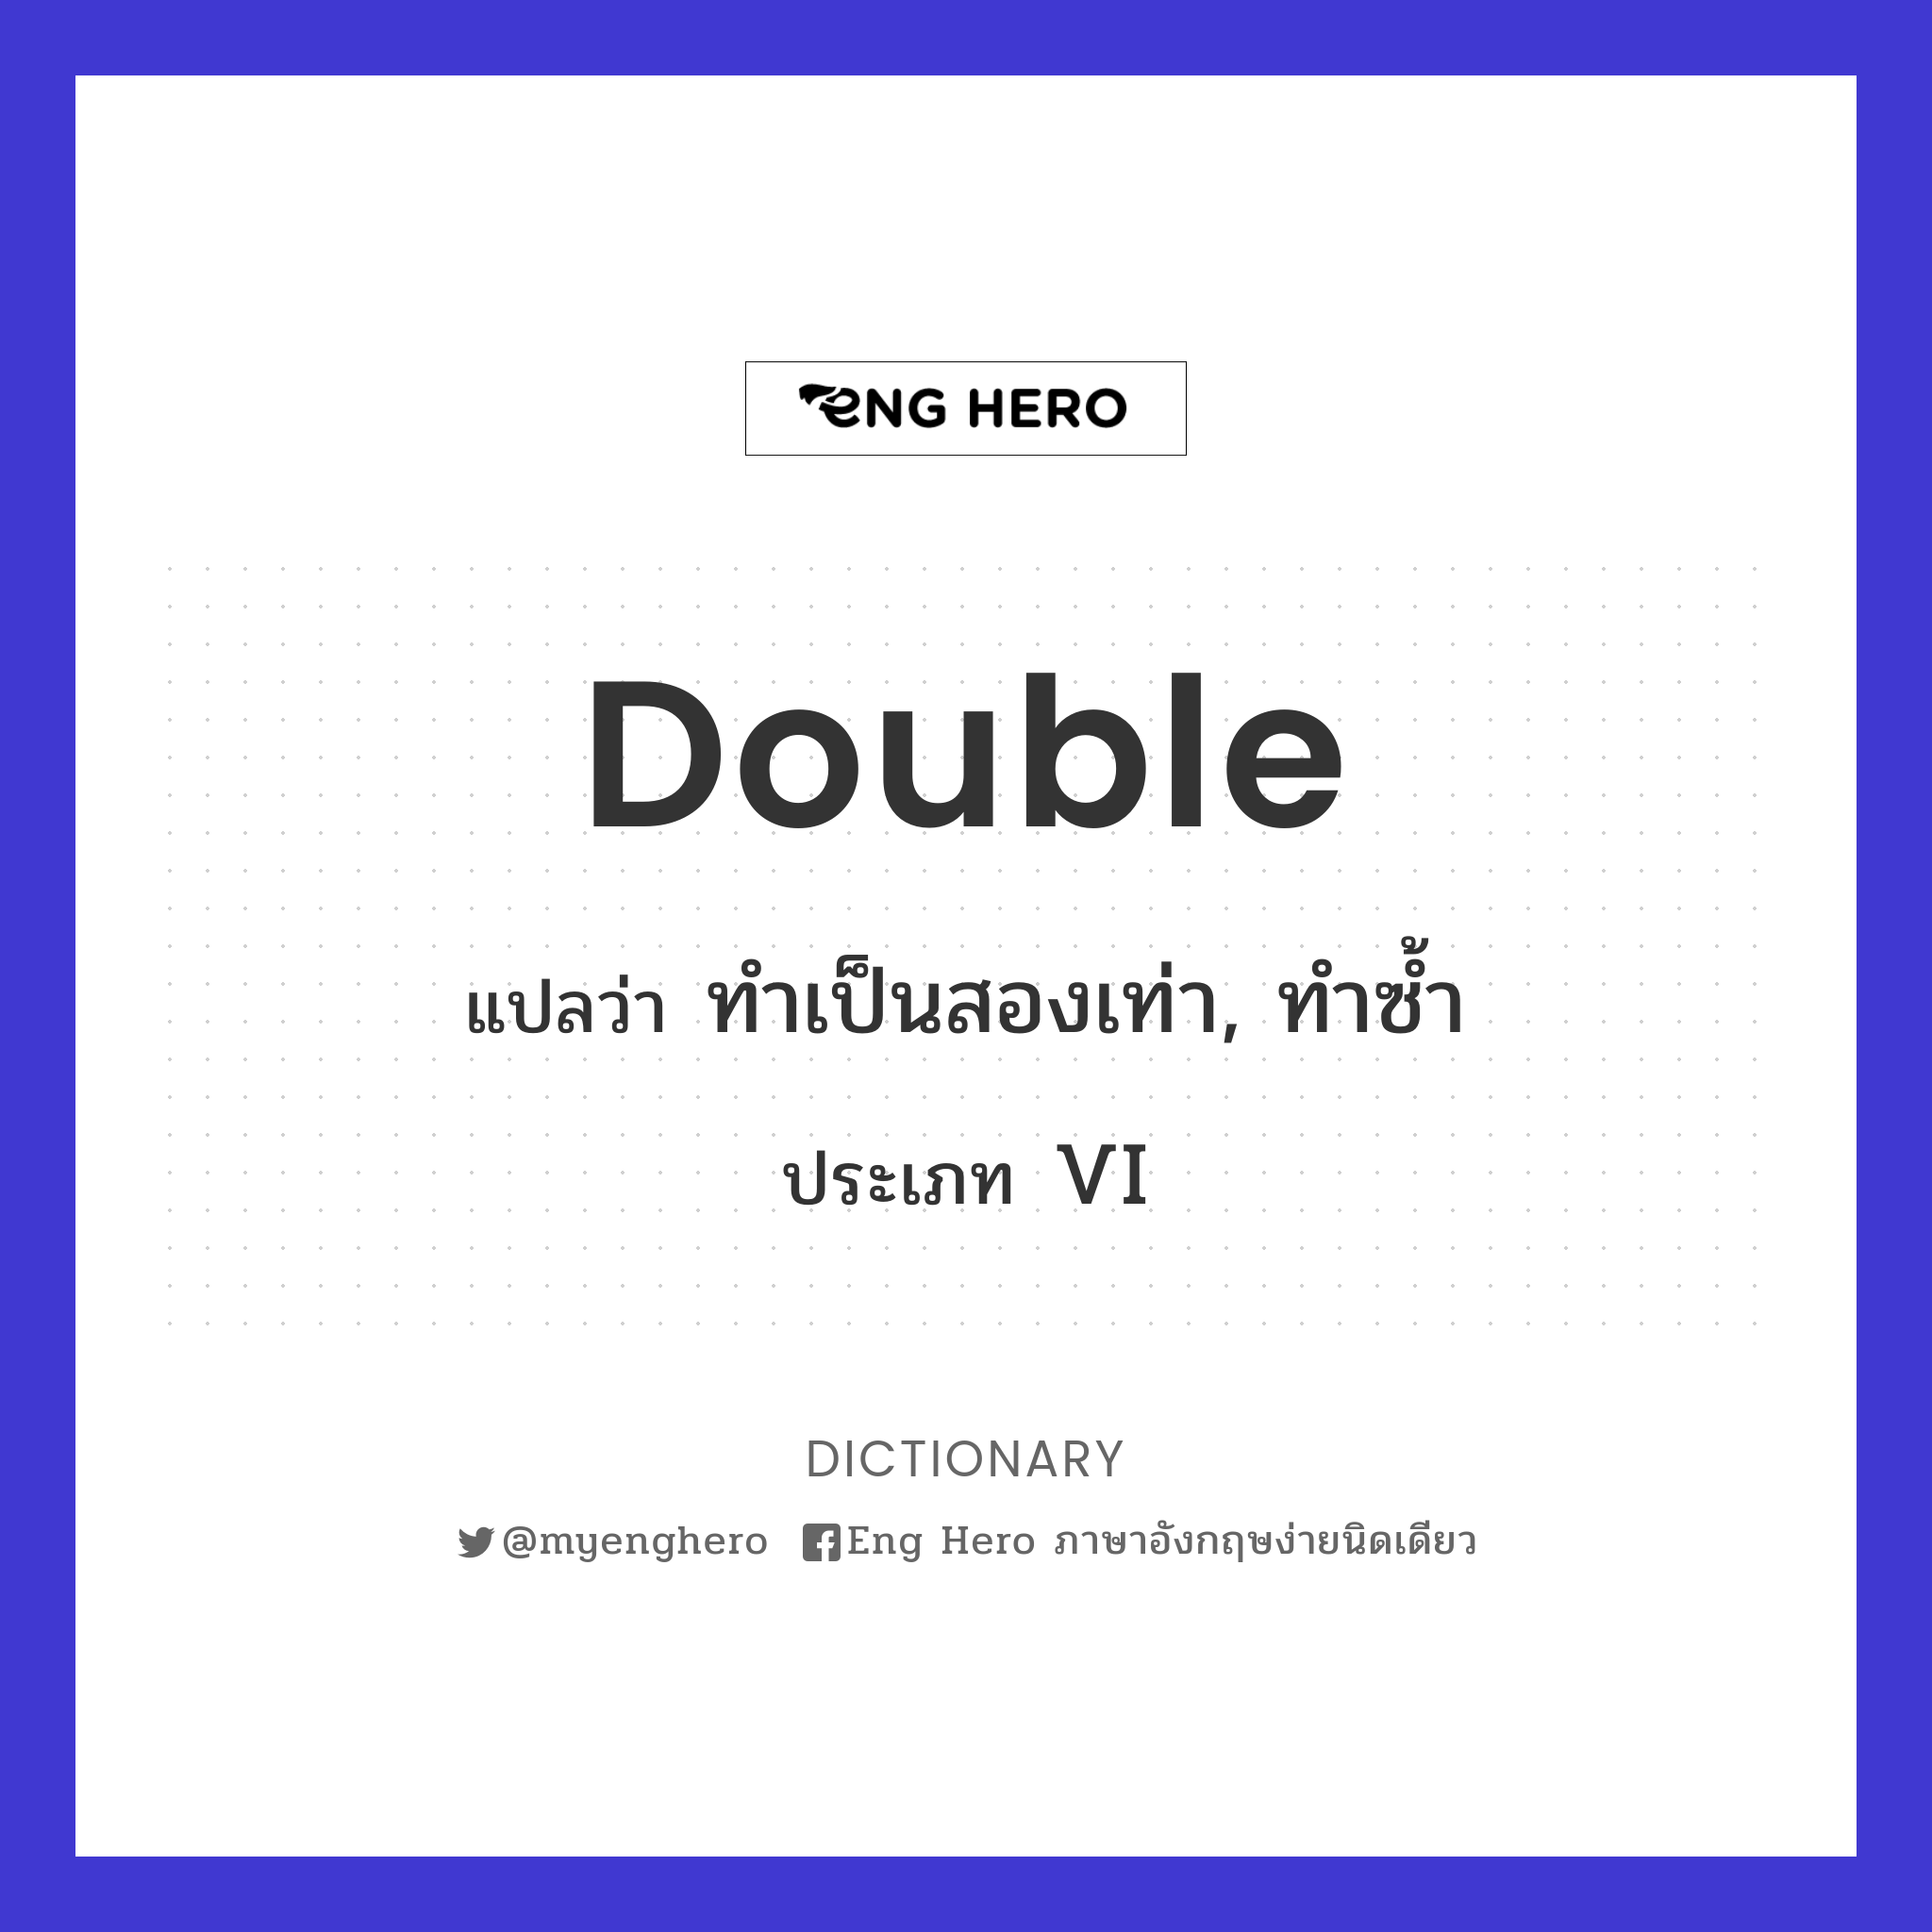 double